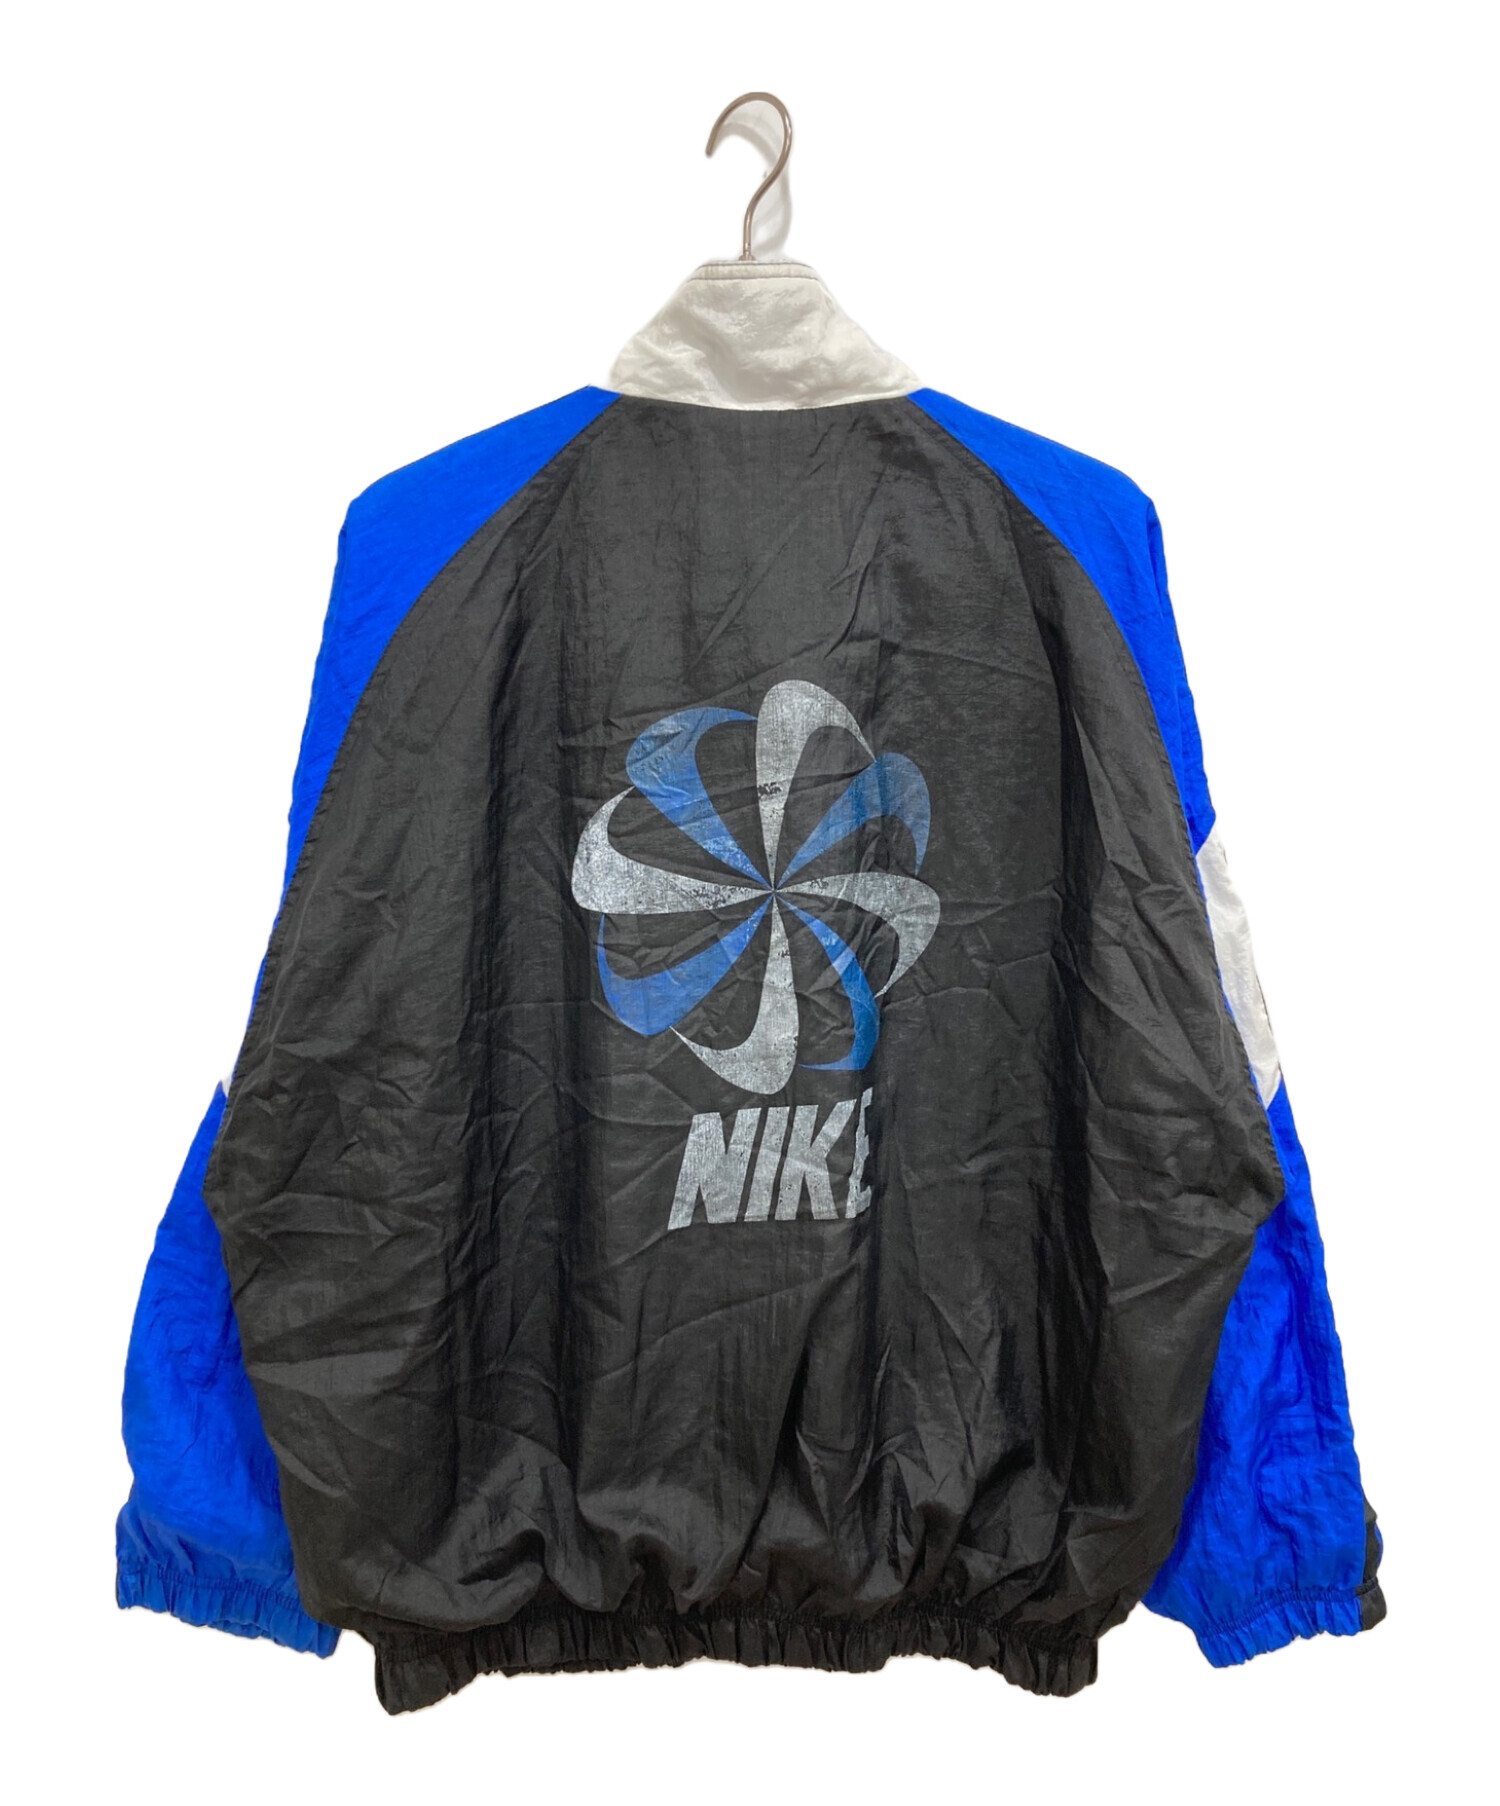 NIKE (ナイキ) 風車ロゴナイロンジャケット ブルー×ブラック サイズ:L